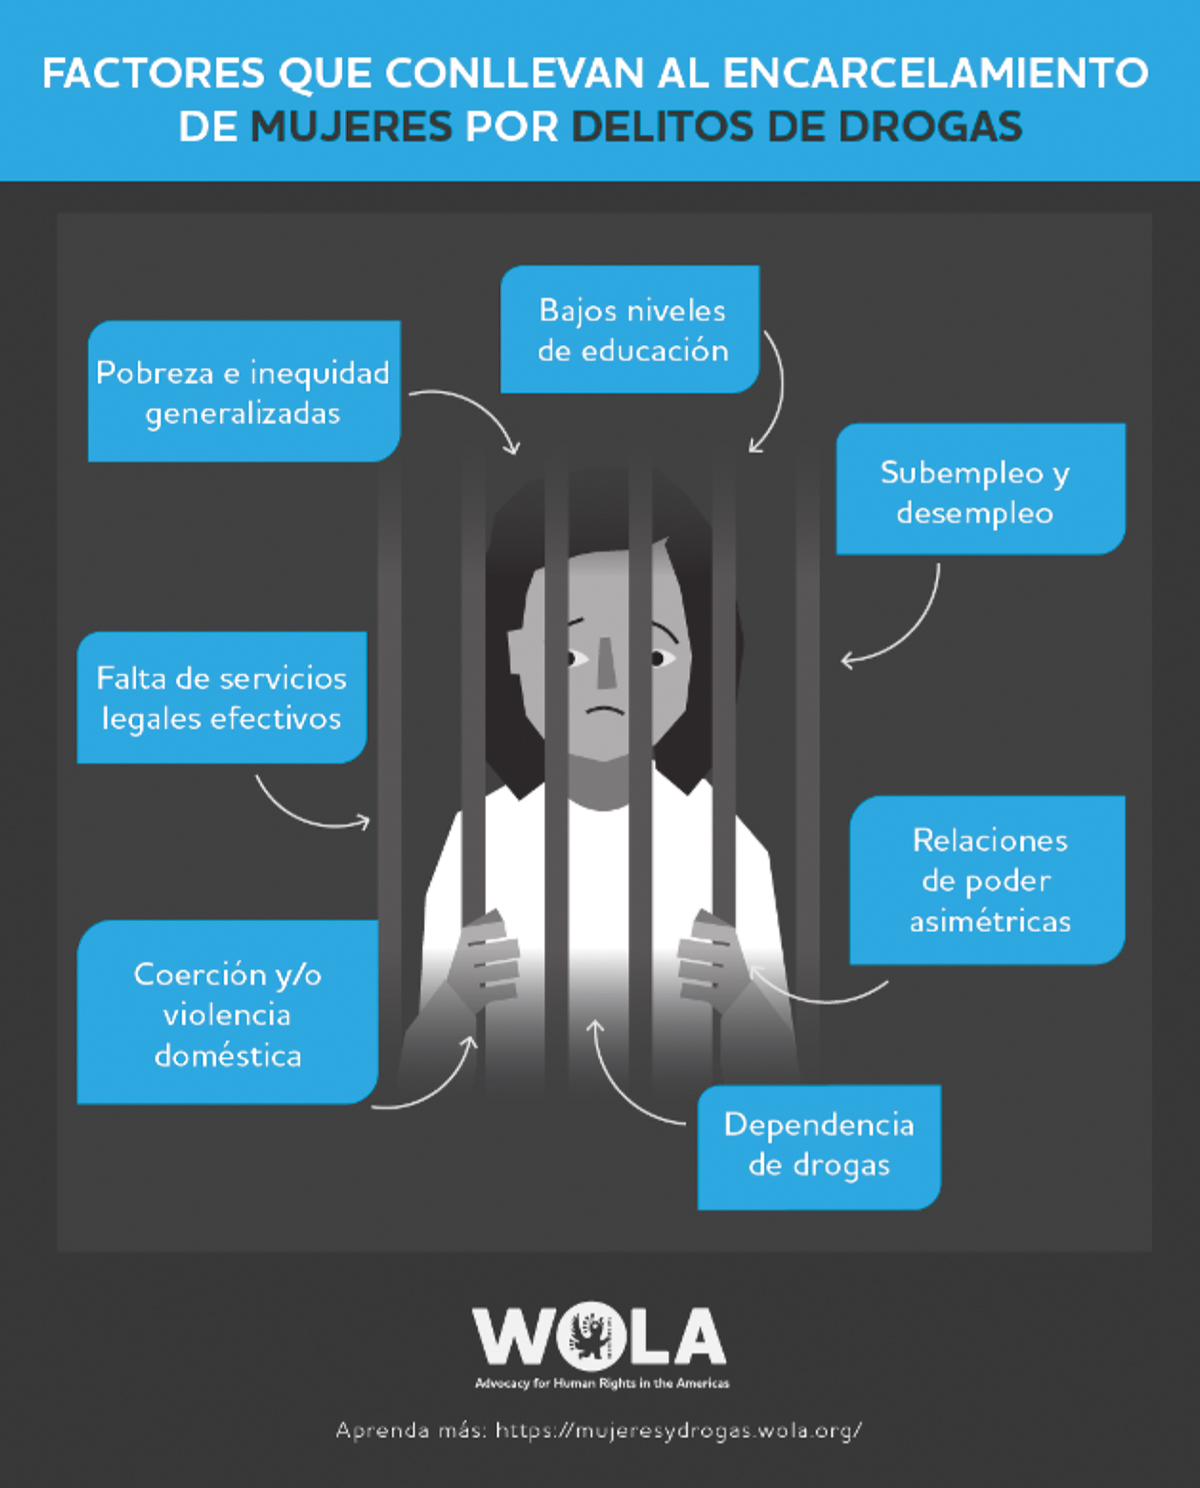 Alertan del incremento de mujeres encarceladas en América Latina